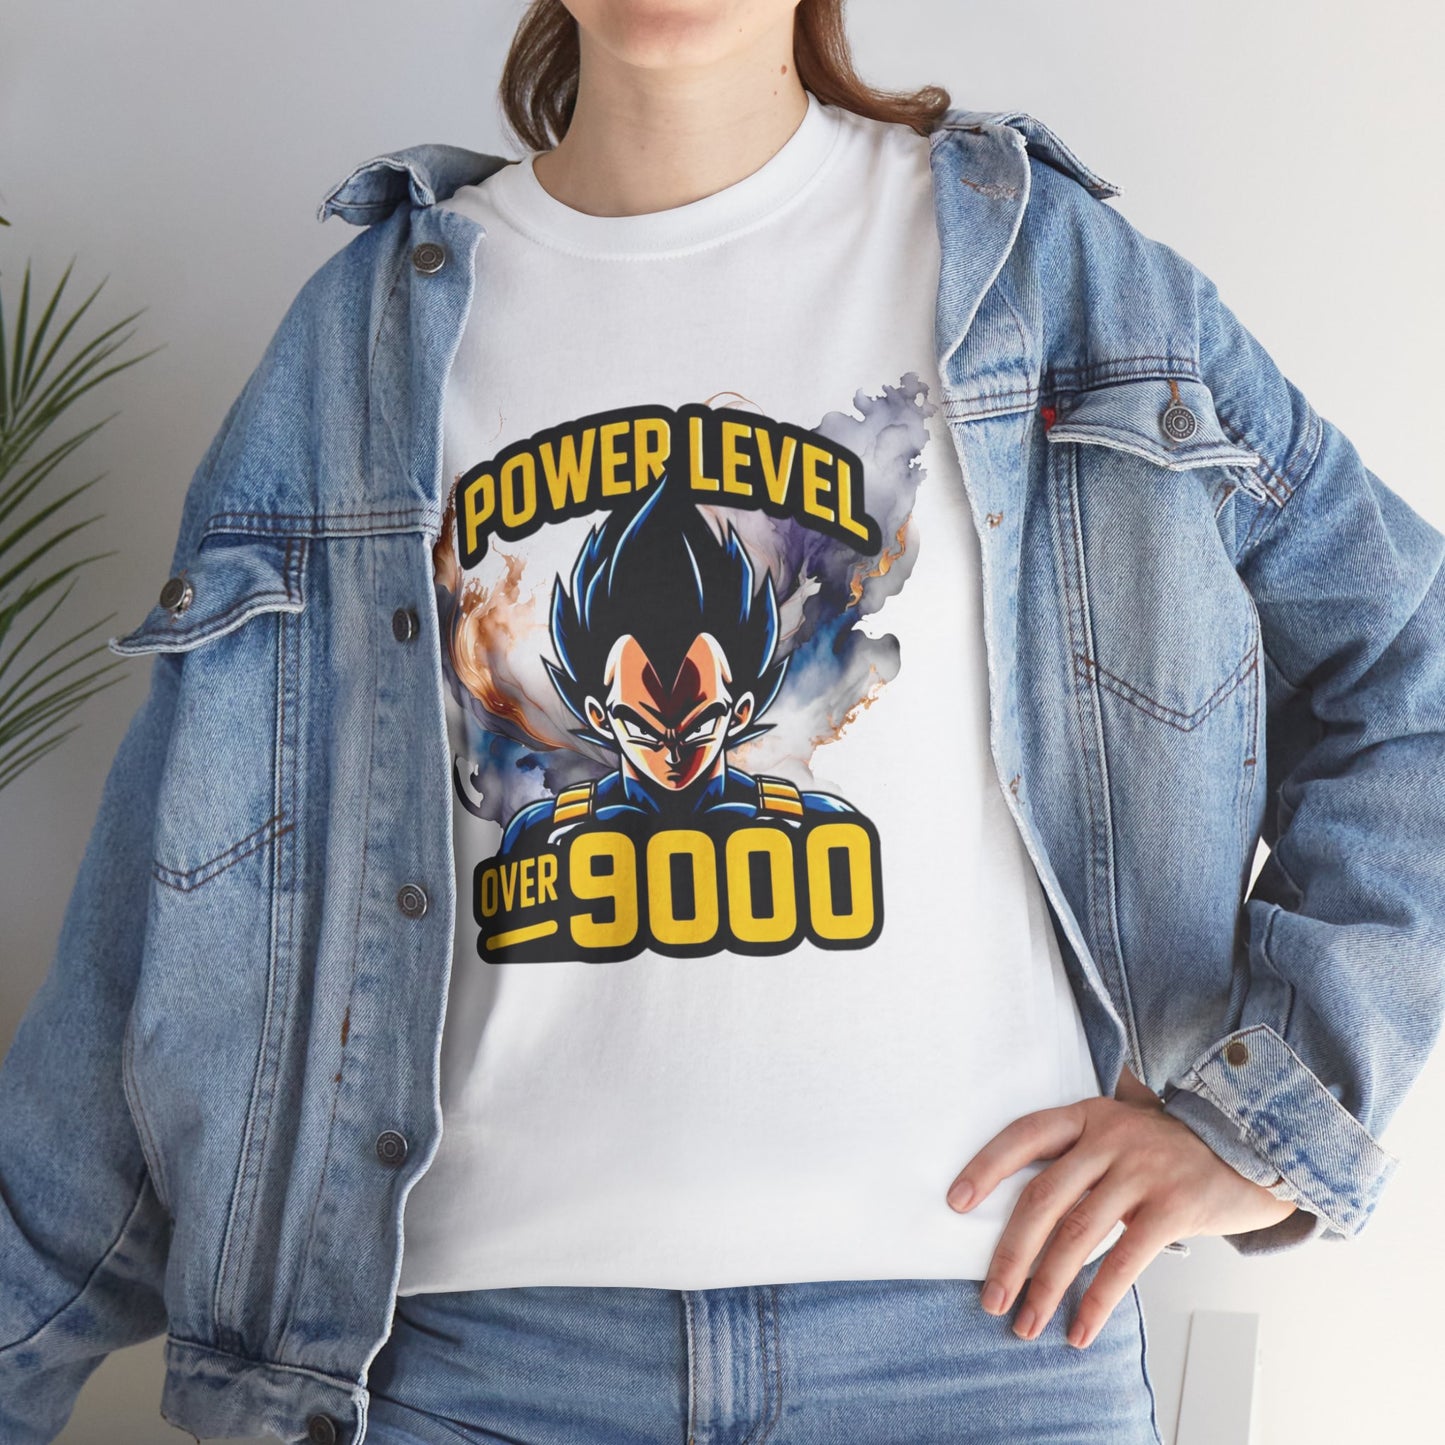 Iconic quote "Power level Over 9000" Unisex Heavy Cotton Tee